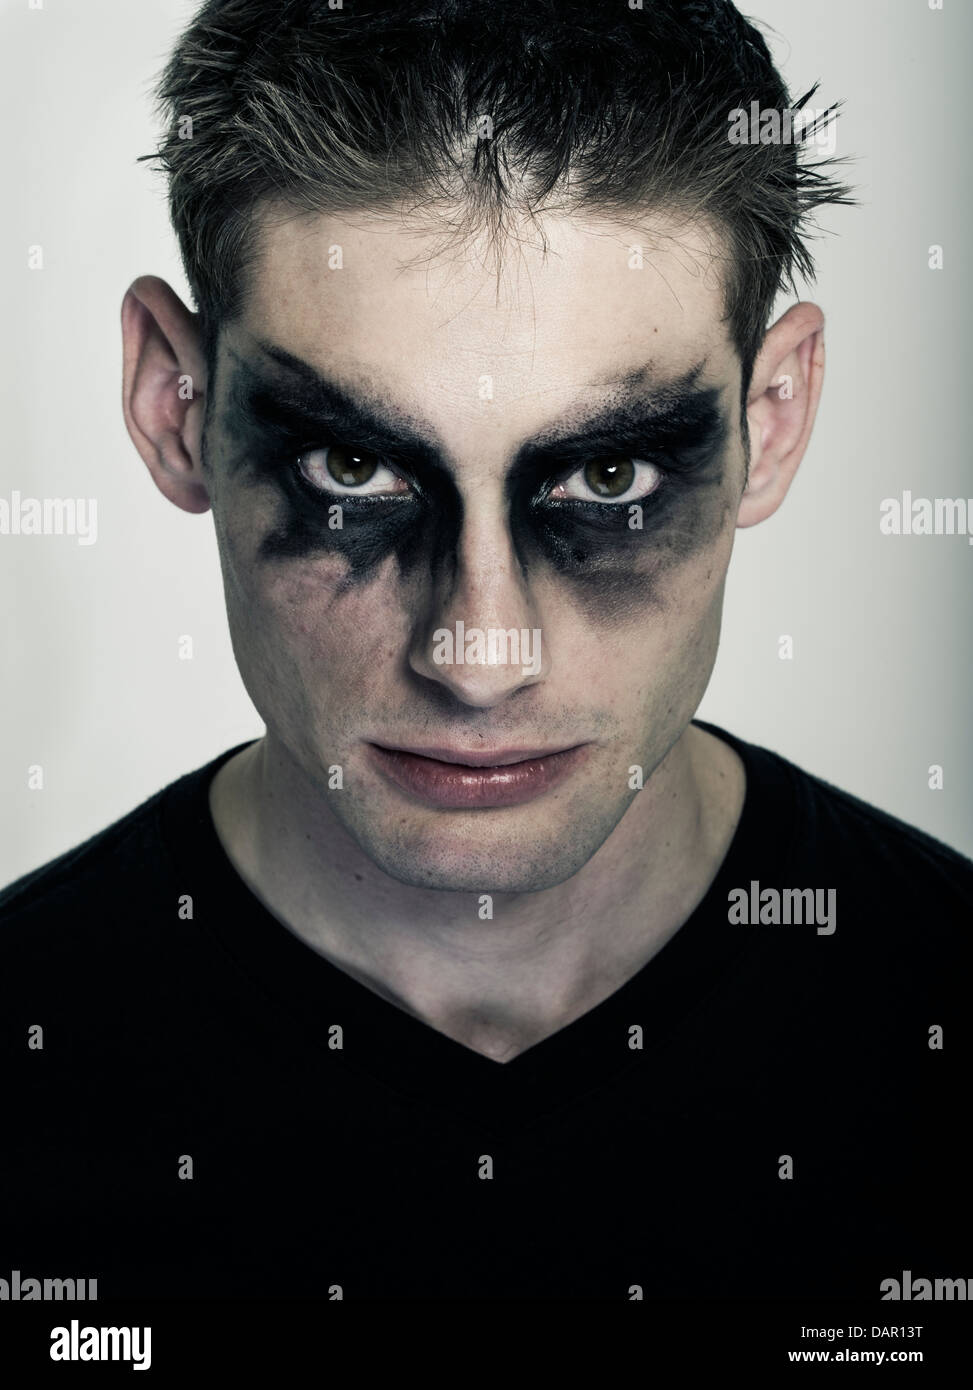 Männliche Goth - Mann in Goth Make-up, Punk-Subkultur Stockfotografie -  Alamy